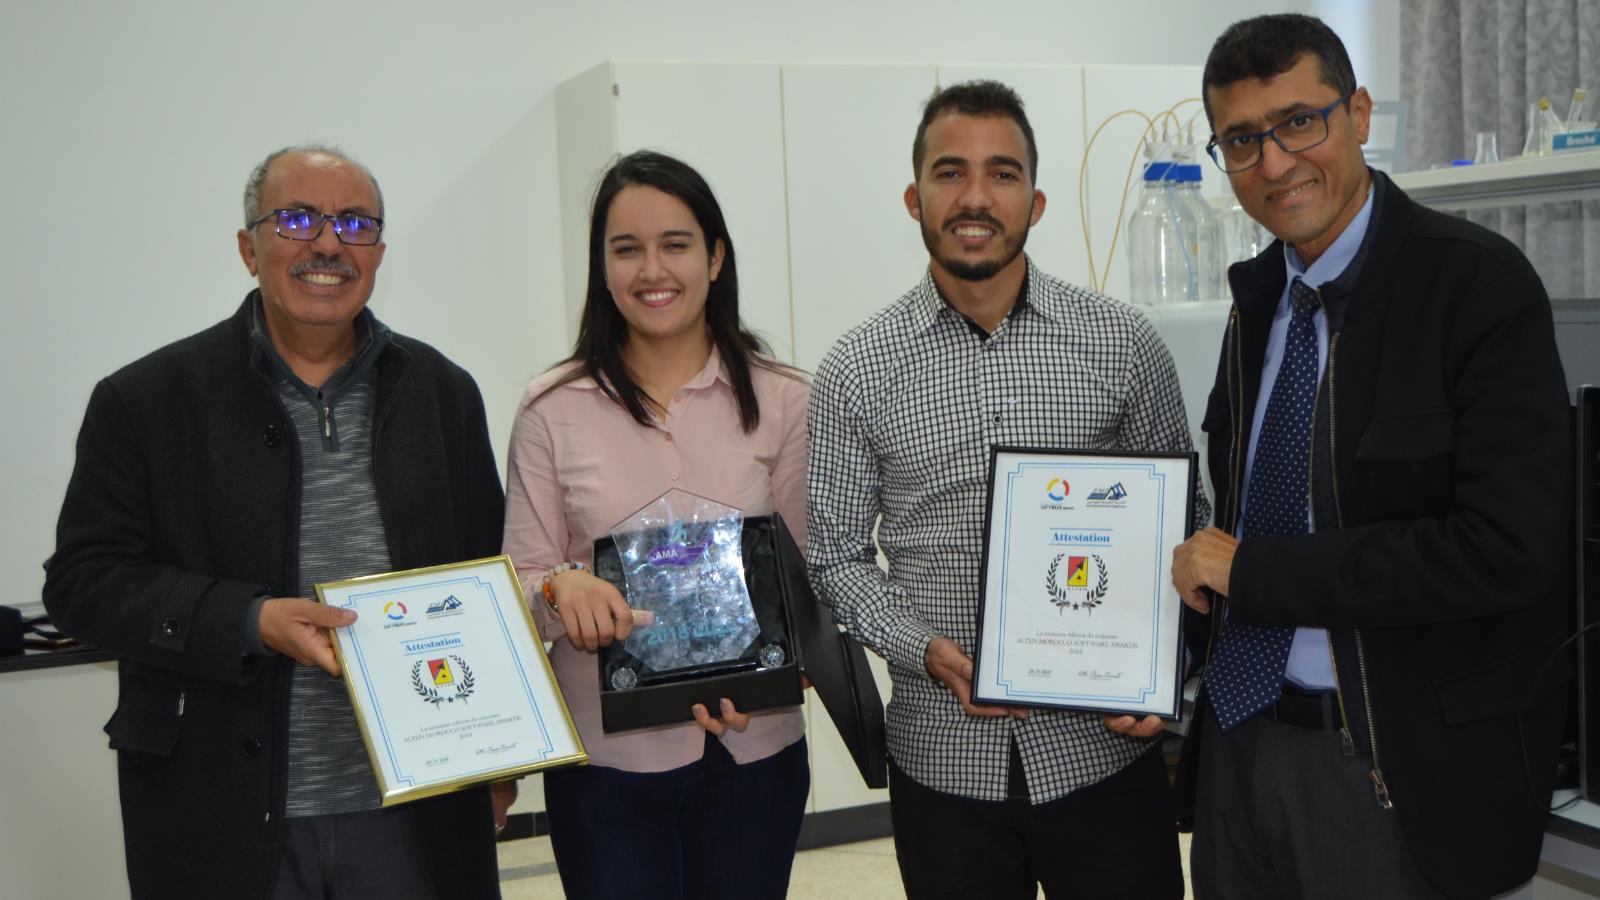 الطالبان عزيز ياسين وابتسام خلوق (وسط الصورة)  تلقيا عروضا من بعض الشركات بعد تتويجهما بالجائزة (الجزيرة)